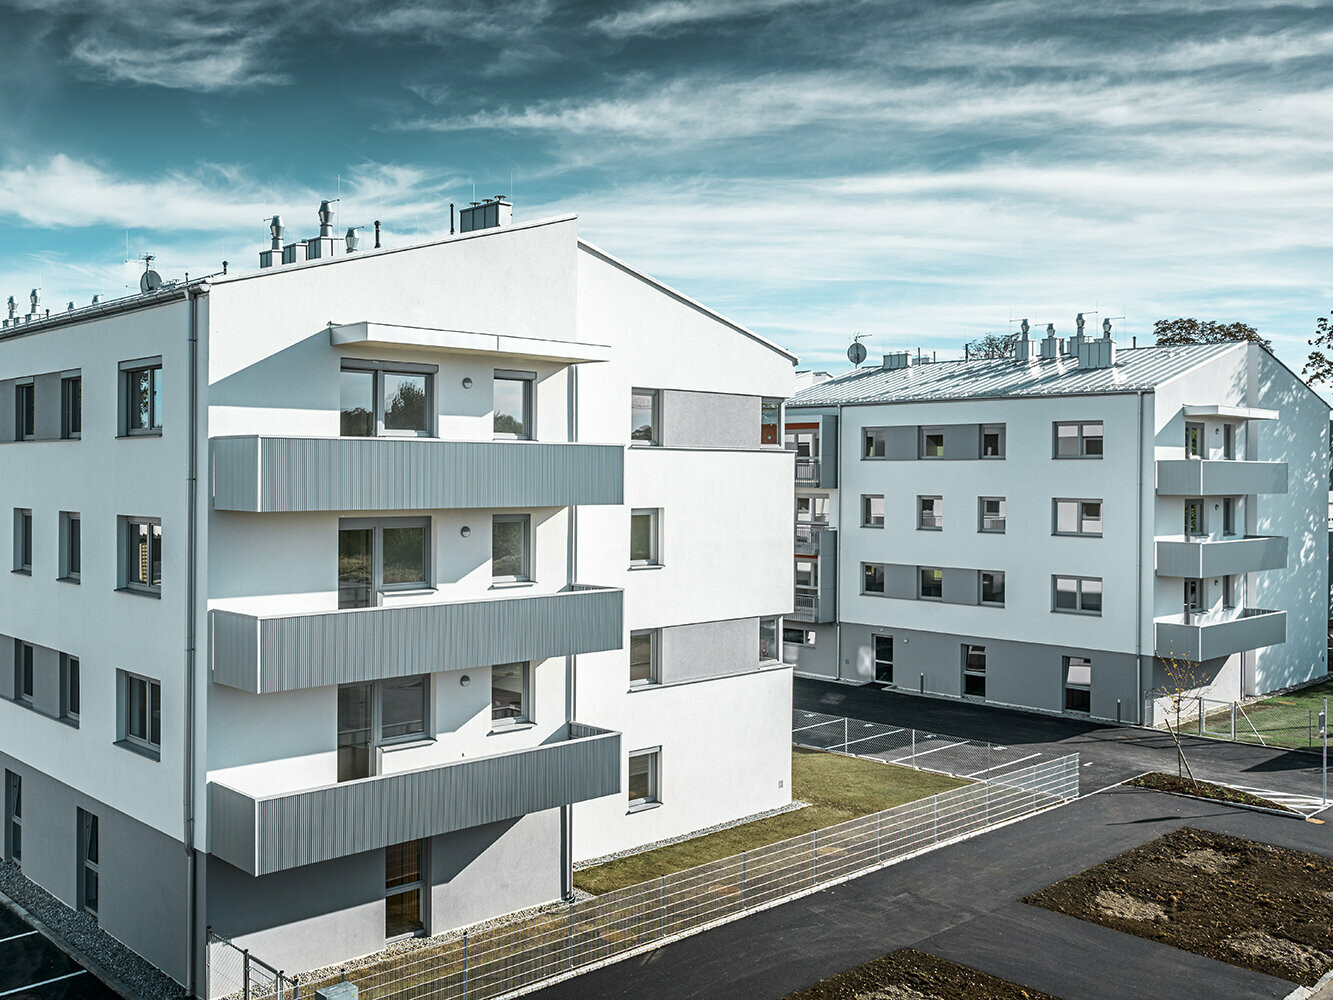 Moderno condominio con facciata bianca e balconi con profilo a zeta PREFA in silver metallizzato